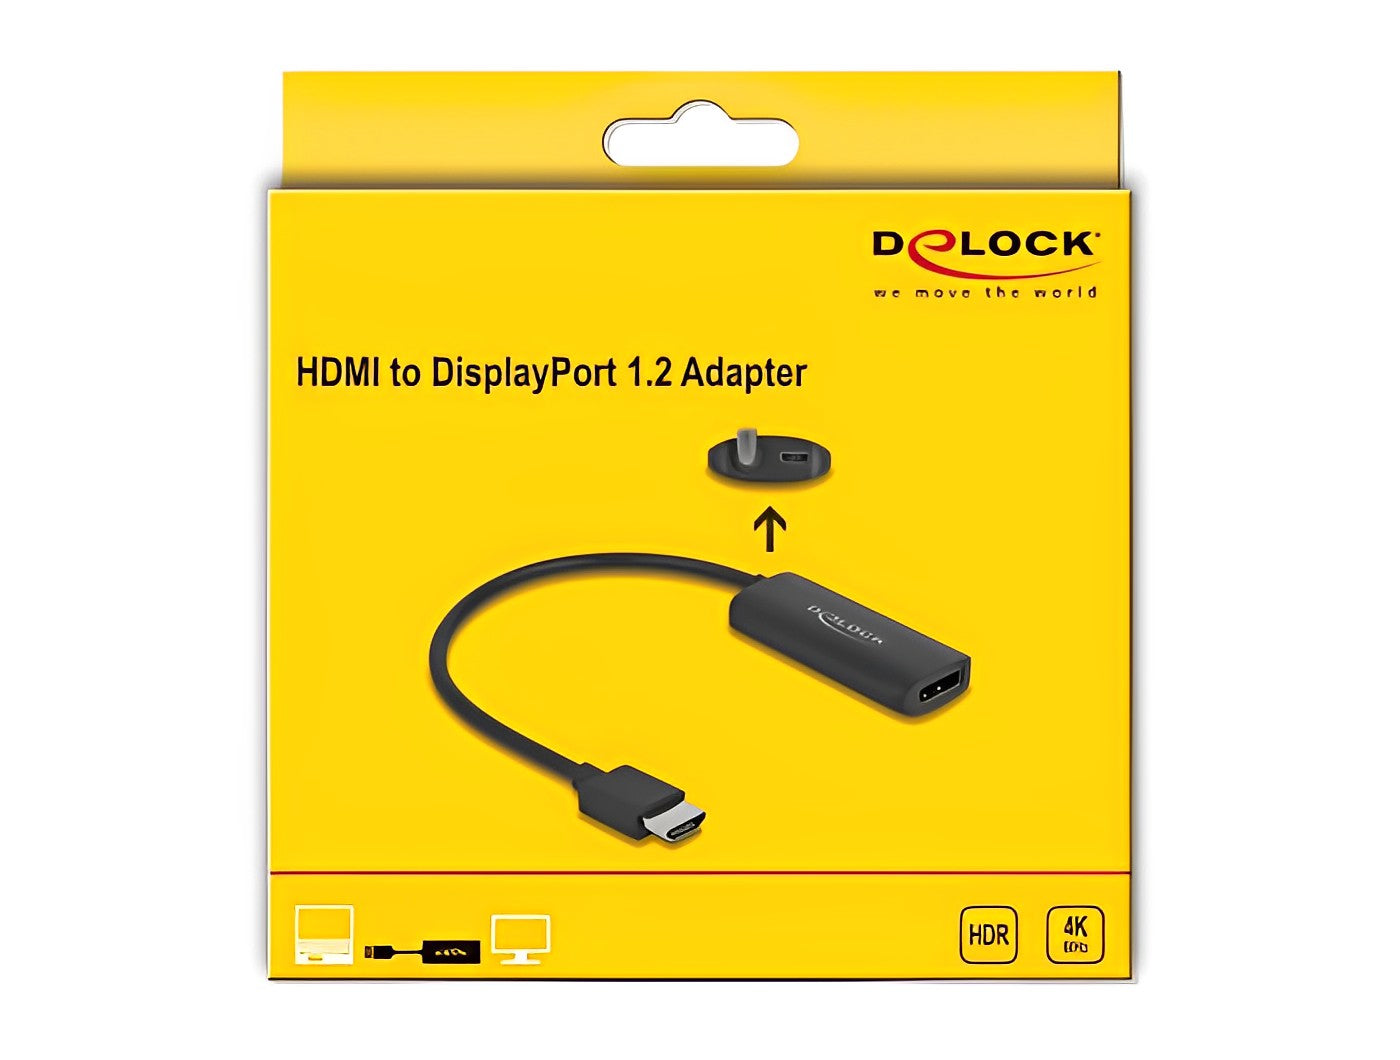 מתאם HDMI 4K זכר לחיבור מסך DisplayPort תומך HDR - delock.israel